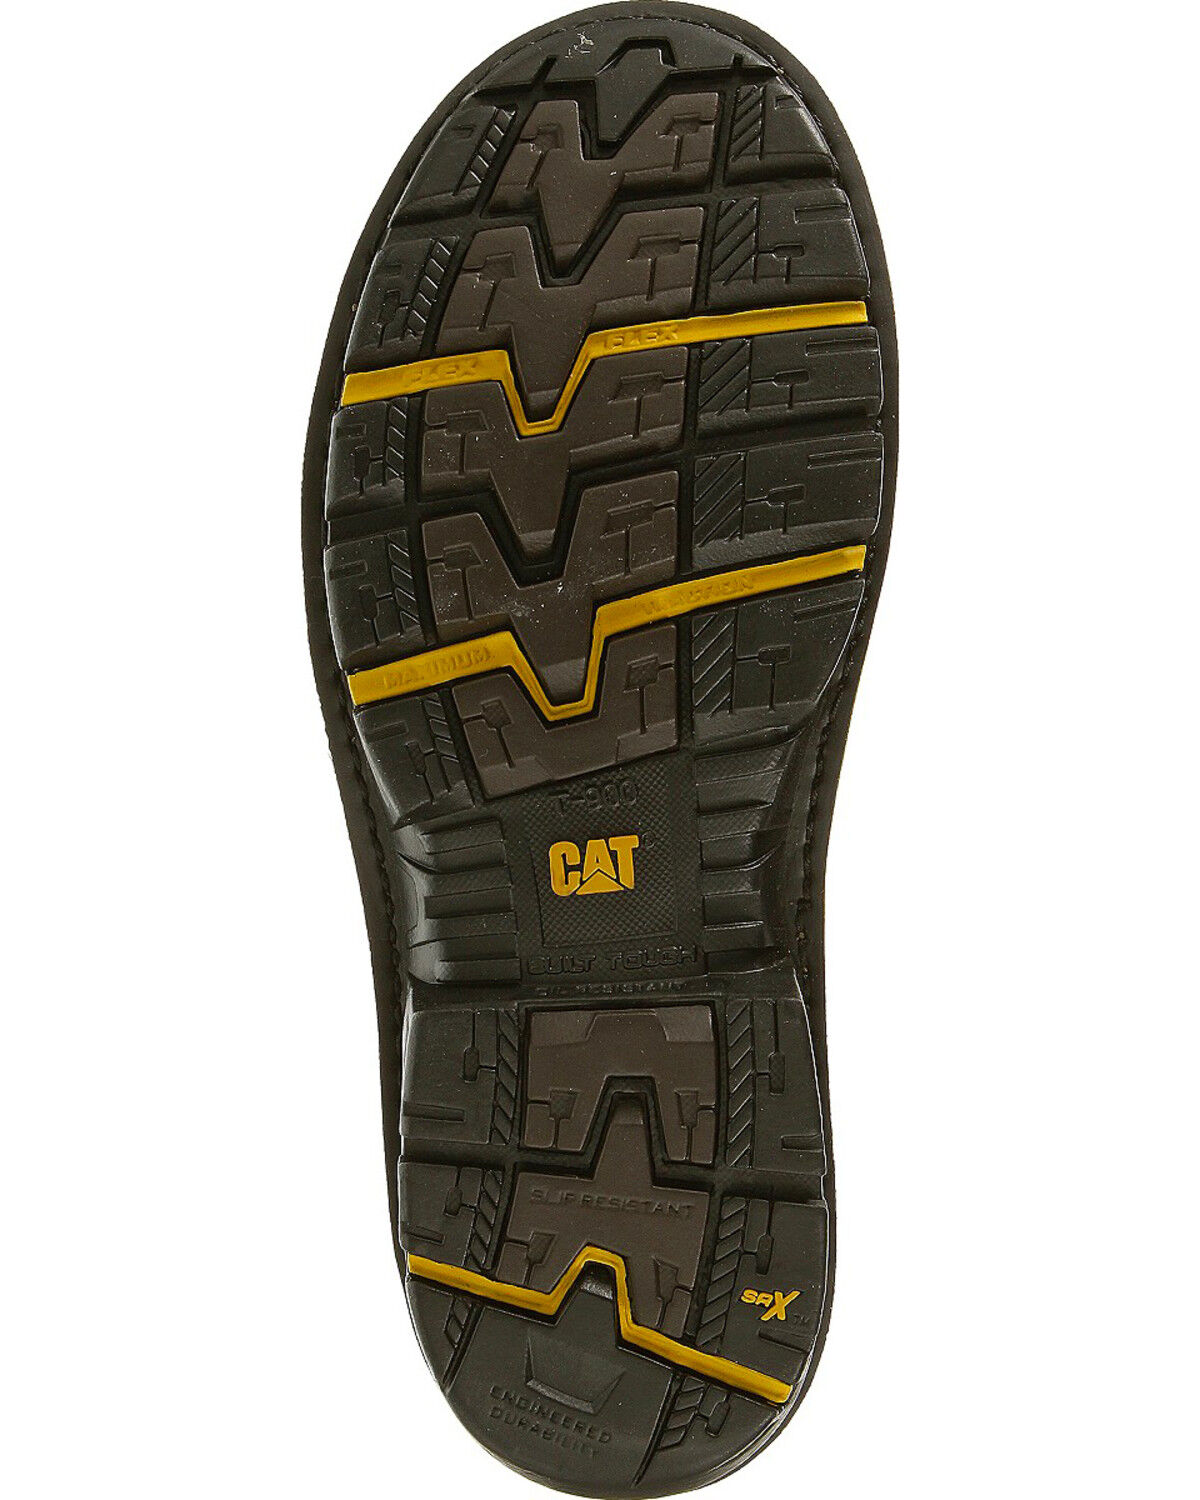 cat t900 boots